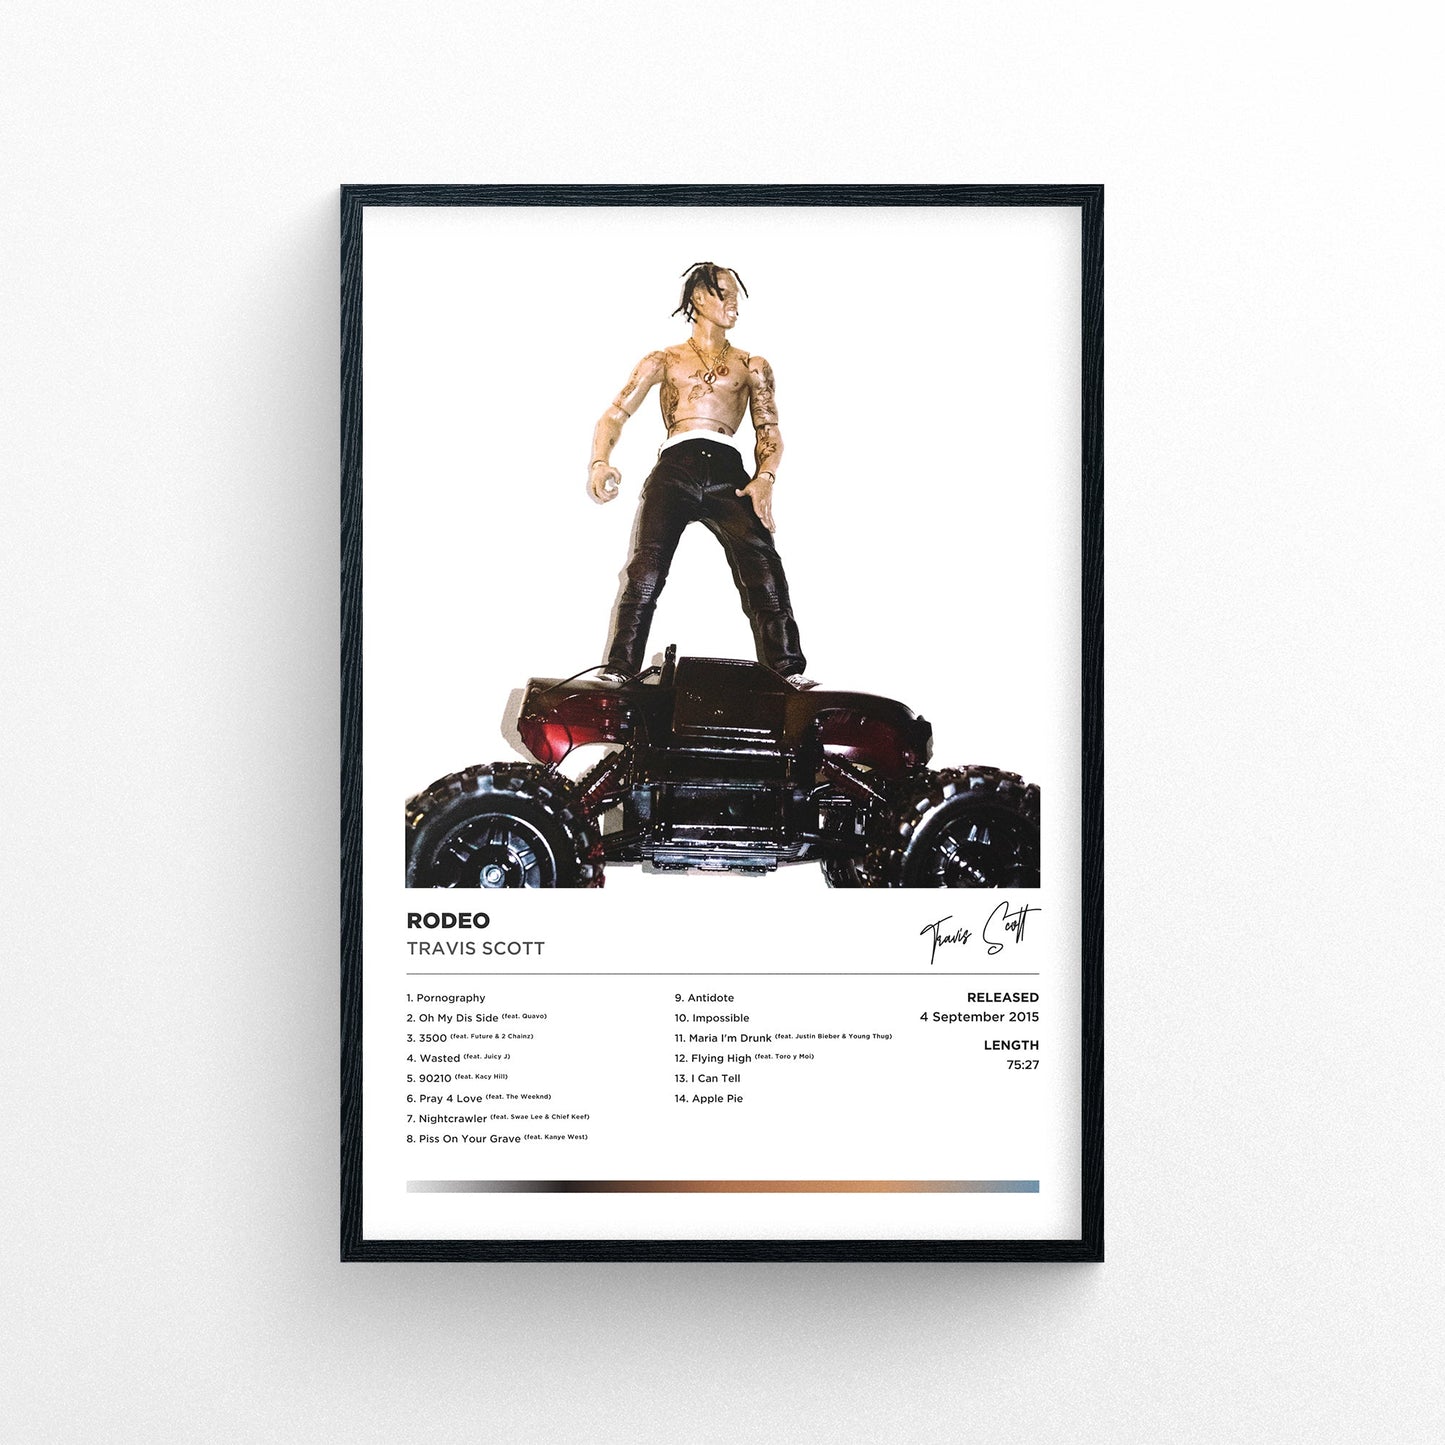 Travis Scott - Rodeo Alternative Cover Framed Poster Print | Polaroid Style | Album Cover Artwork